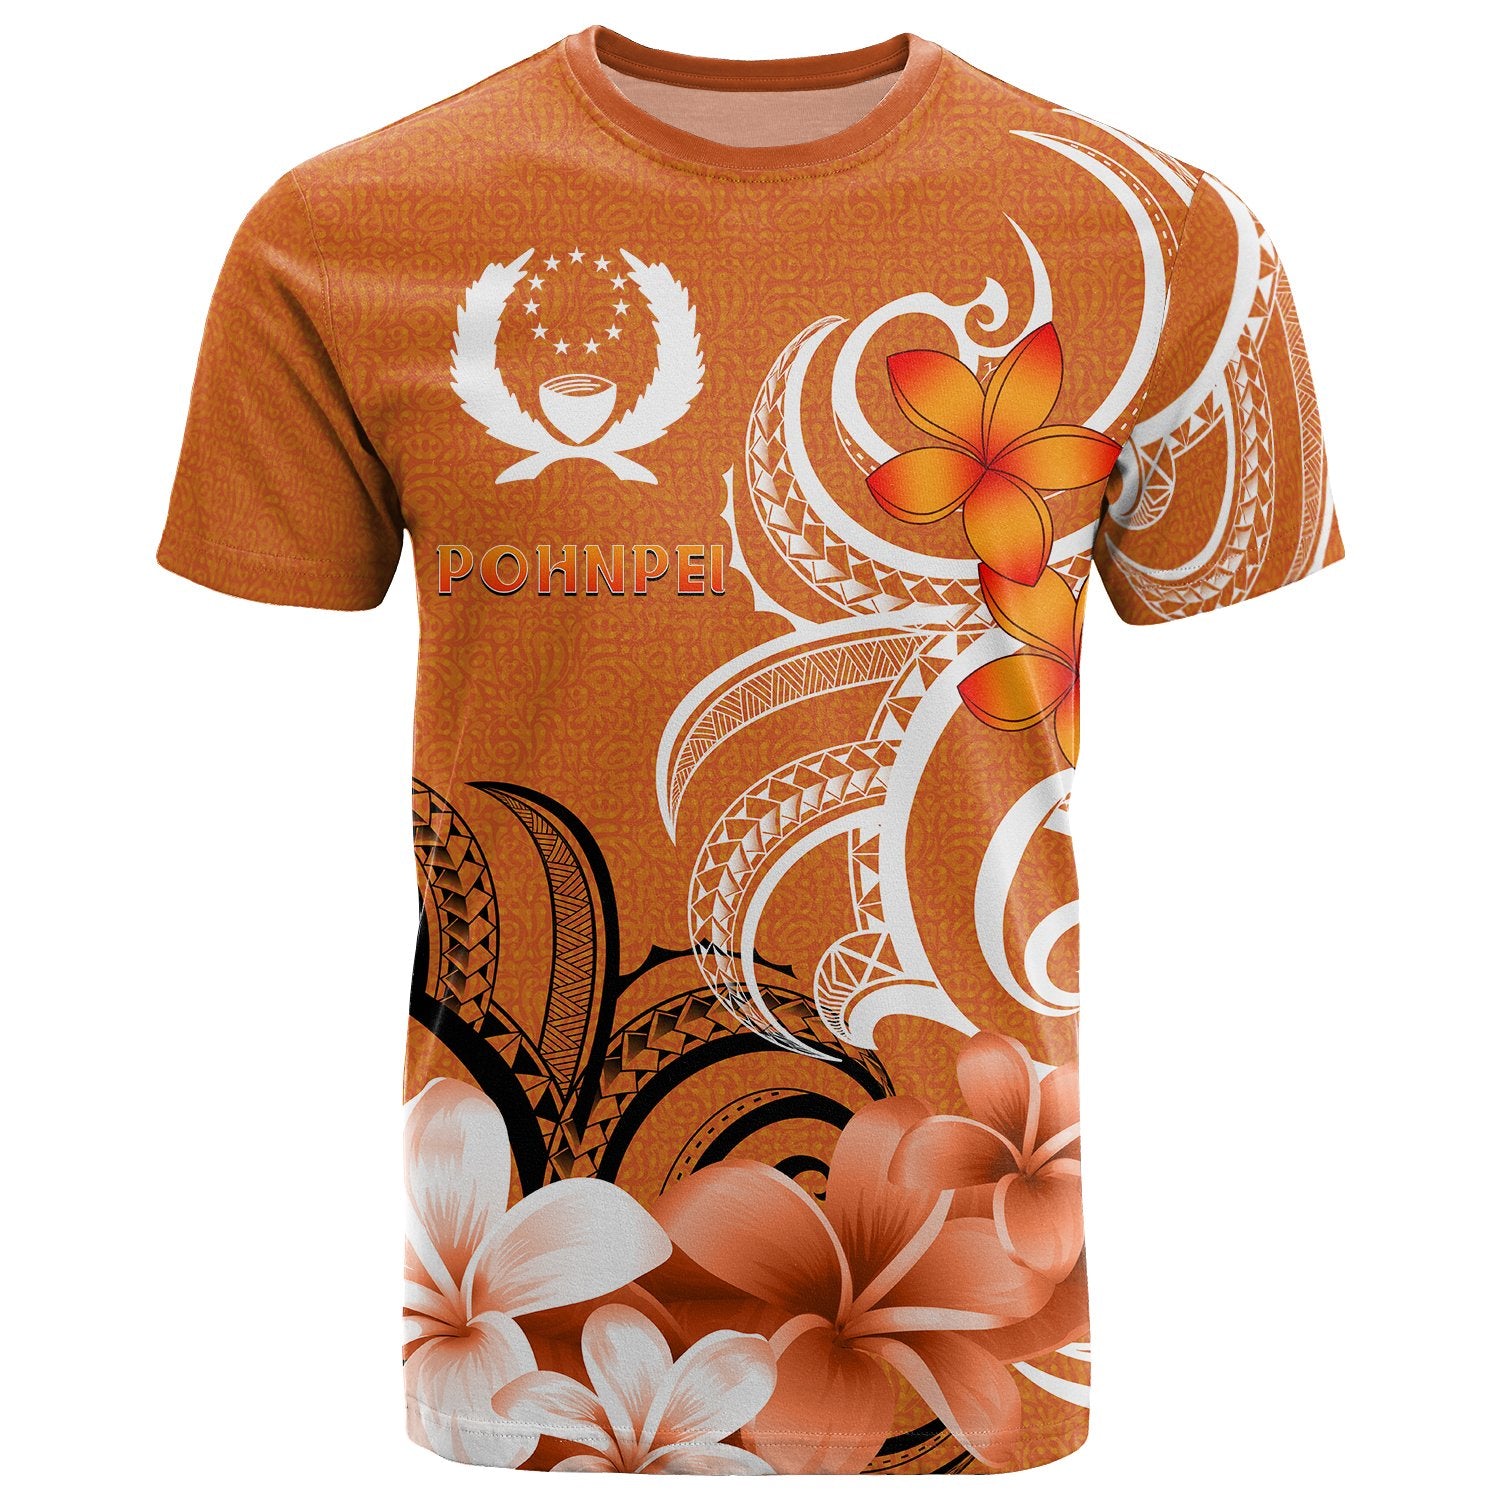 Pohpei T Shirts Pohnpei Spirit Unisex Orange - Polynesian Pride